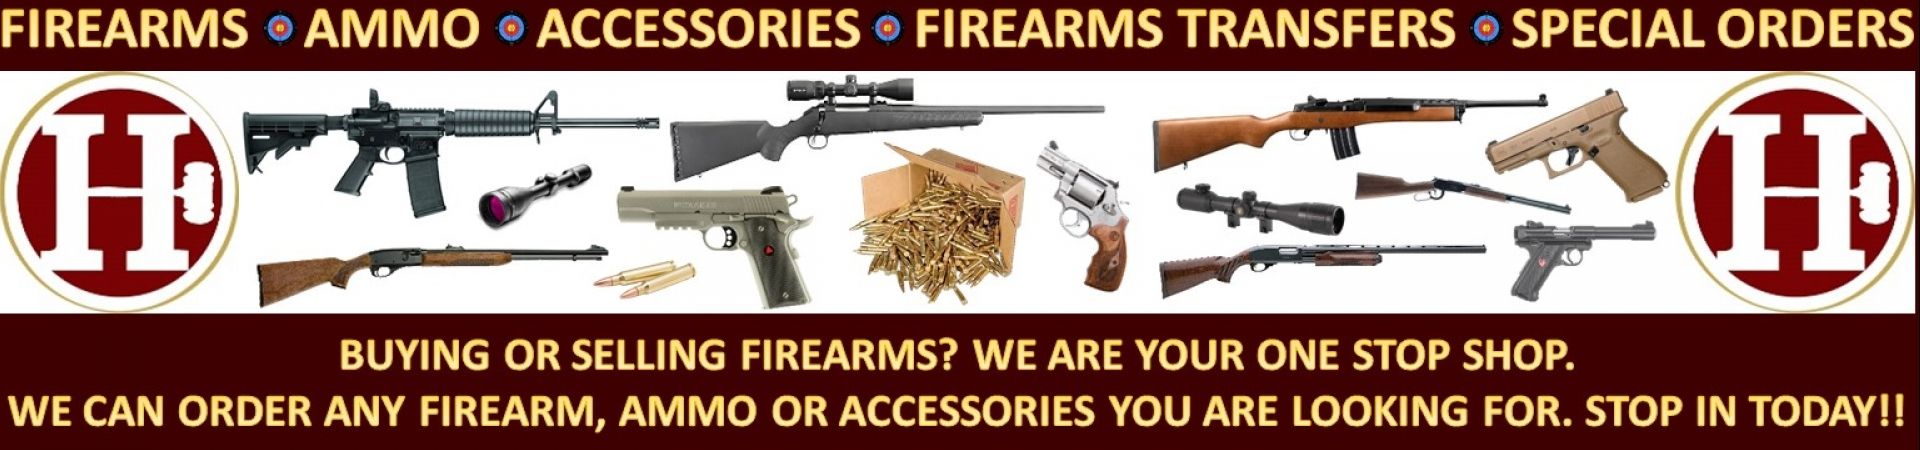 Firearms banner